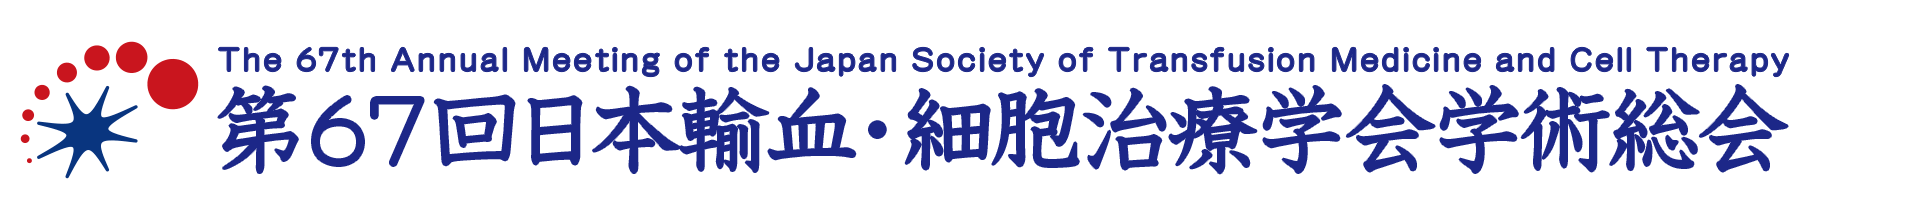 第67回日本輸血・細胞治療学会学術総会